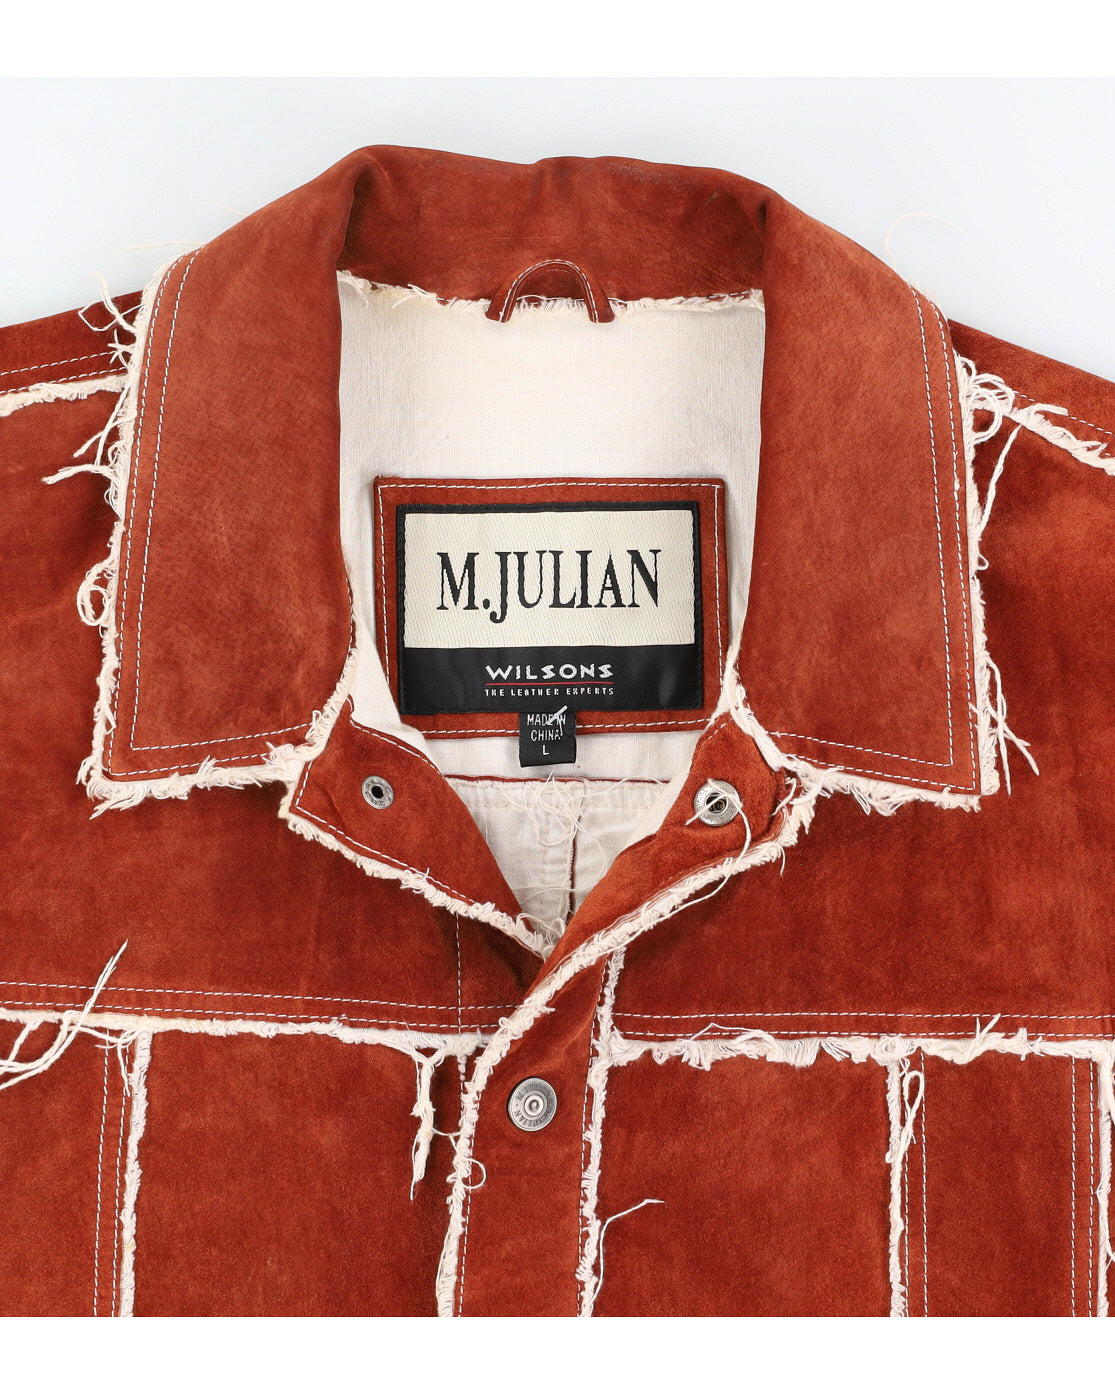 Vintage 90s Wilsons M.Julian Brown Frayed Suede Jacket - L